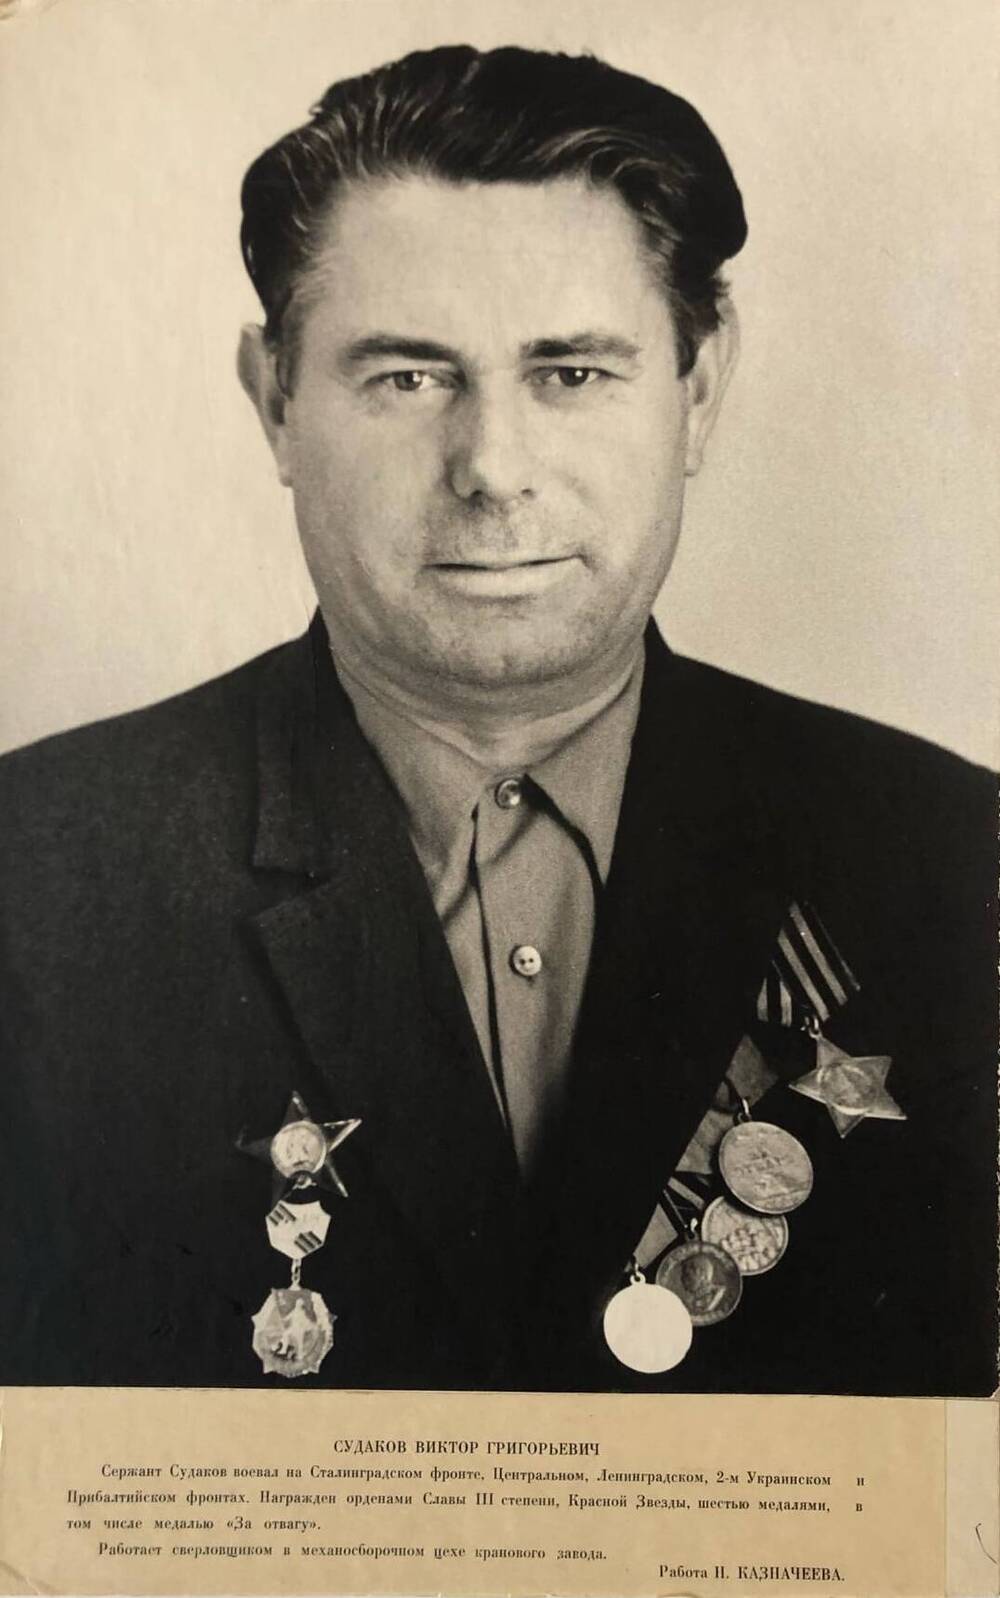 Фотография Судакова Виктора Григорьевича, участника Великой Отечественной войны 1941-1945 гг.